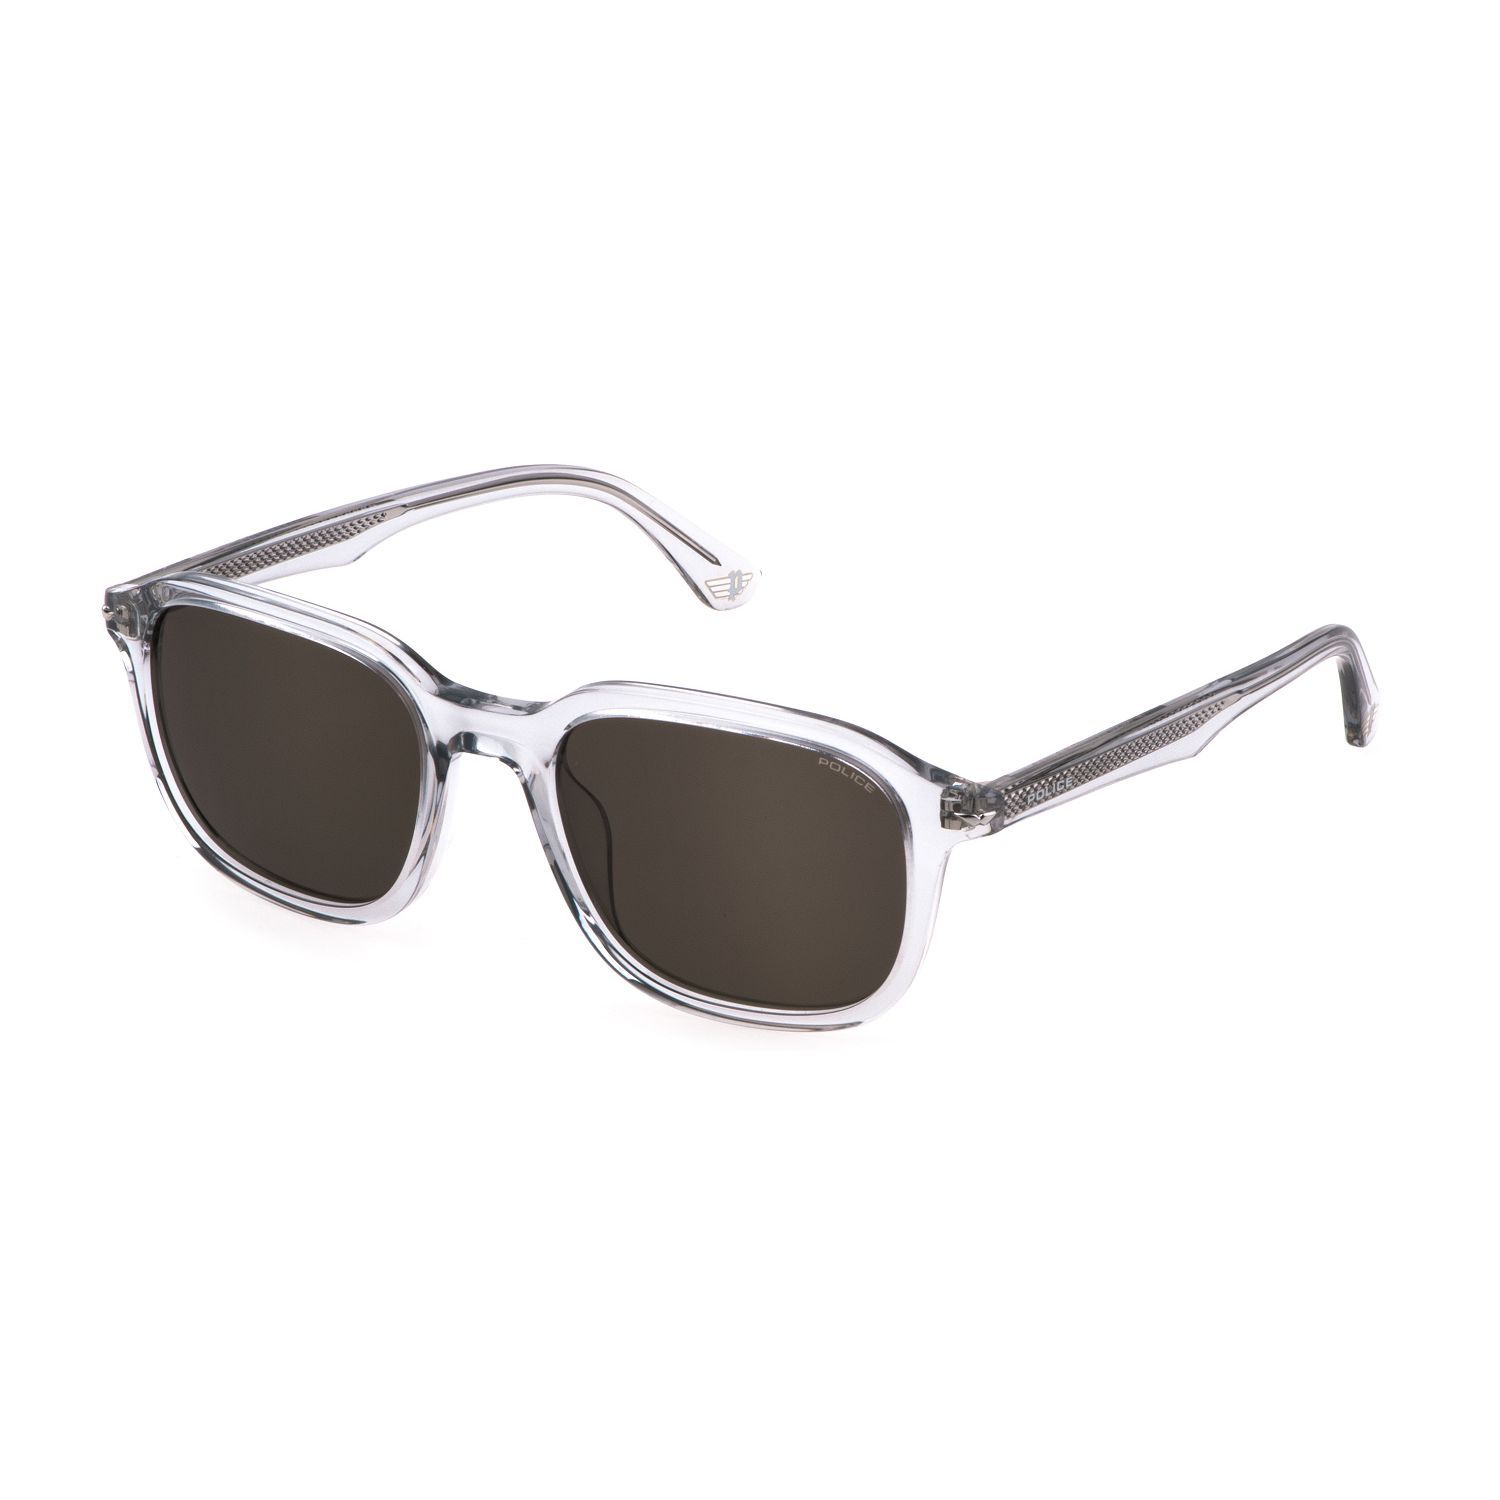 SPLL81M Square Sunglasses 06A7 - size 53